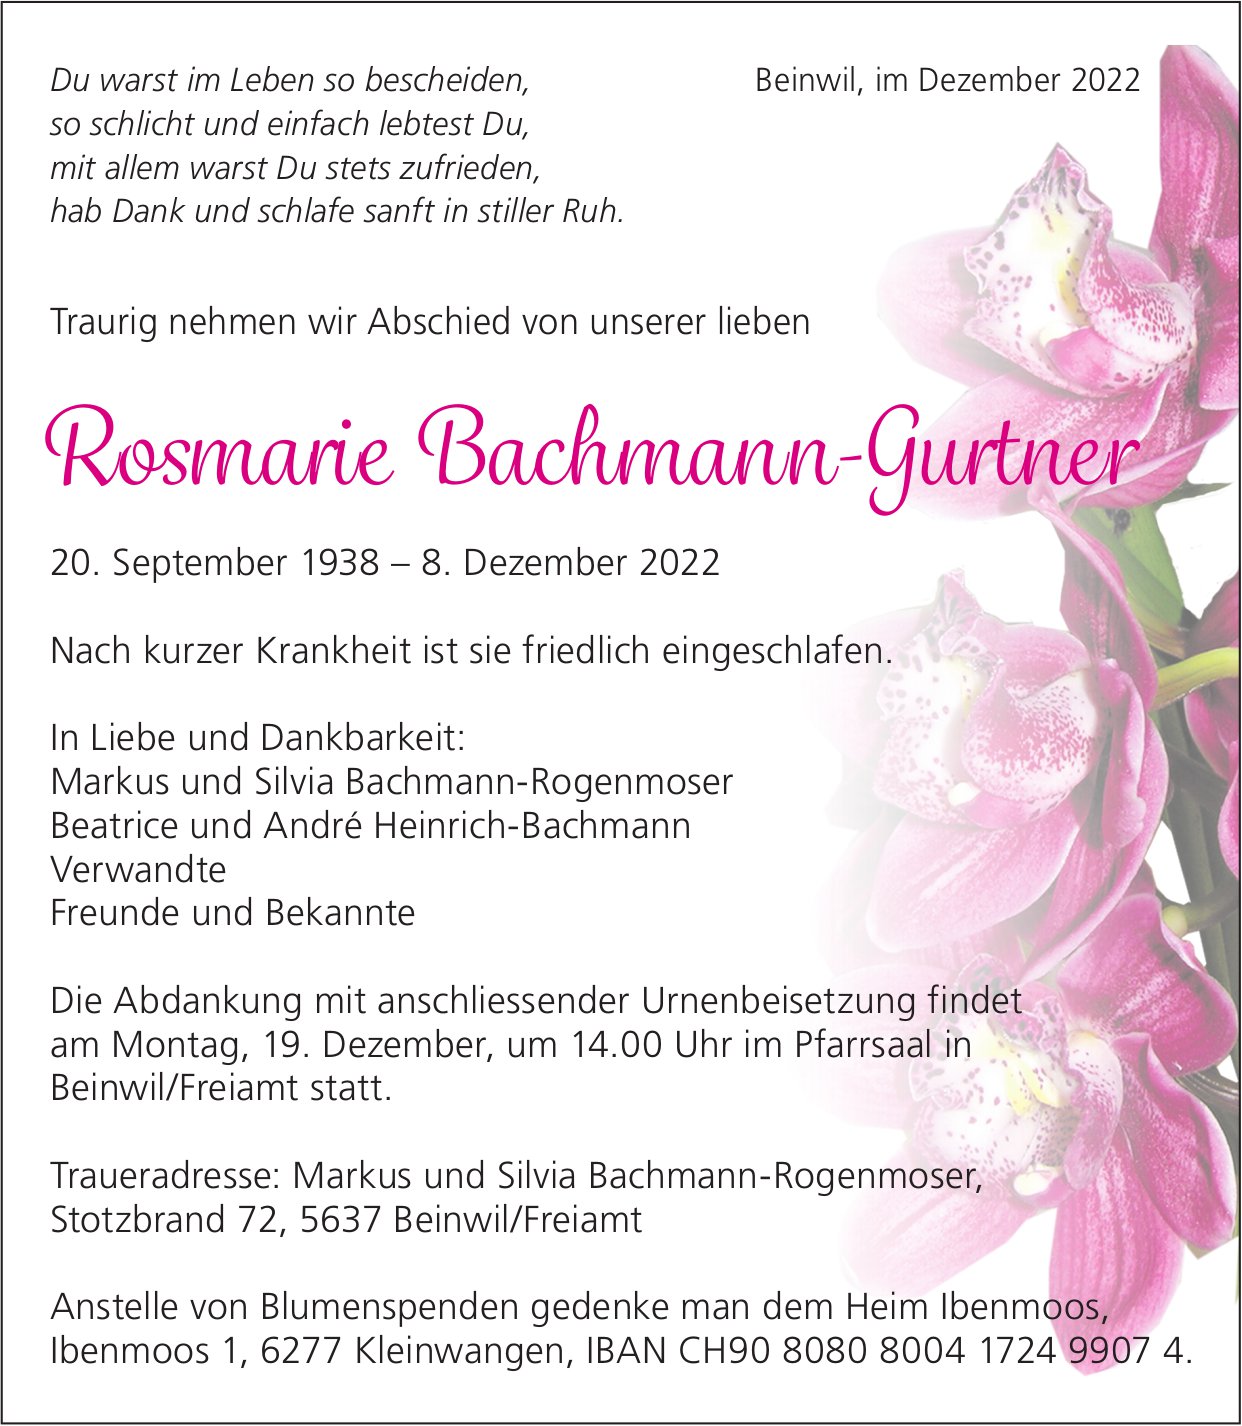 Bachmann-Gurtner Rosmarie, Dezember 2022 / TA